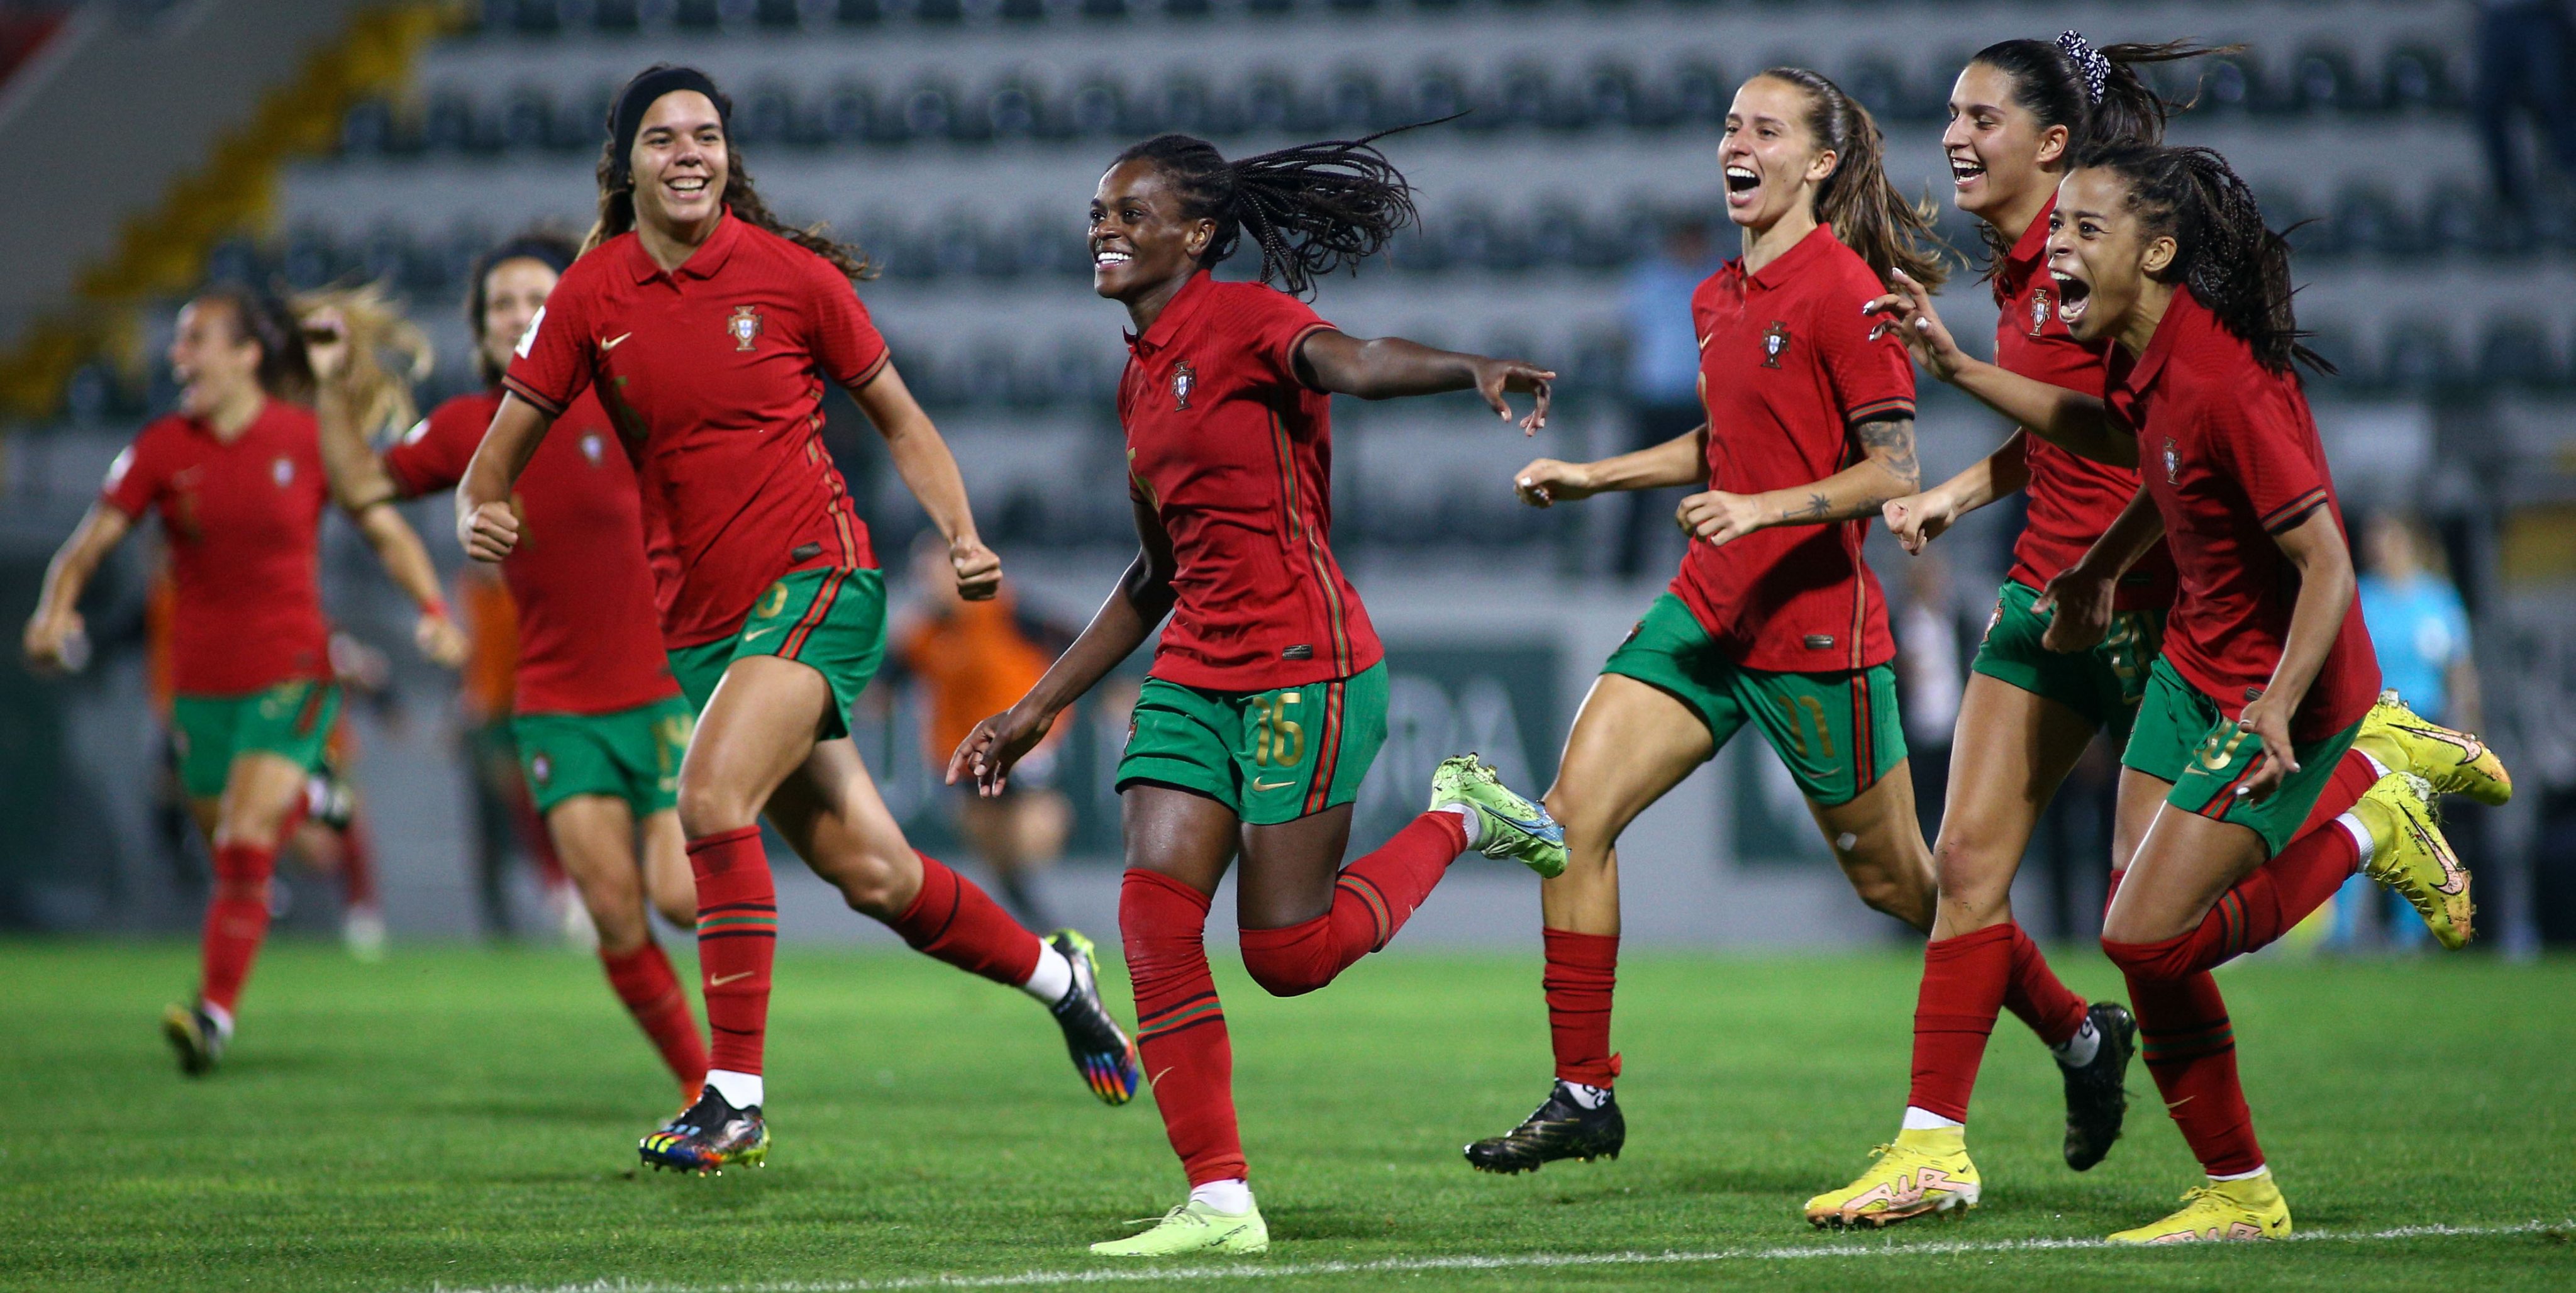 Portugal entra a ganhar no Europeu sub-18 feminino - Basquetebol - Jornal  Record